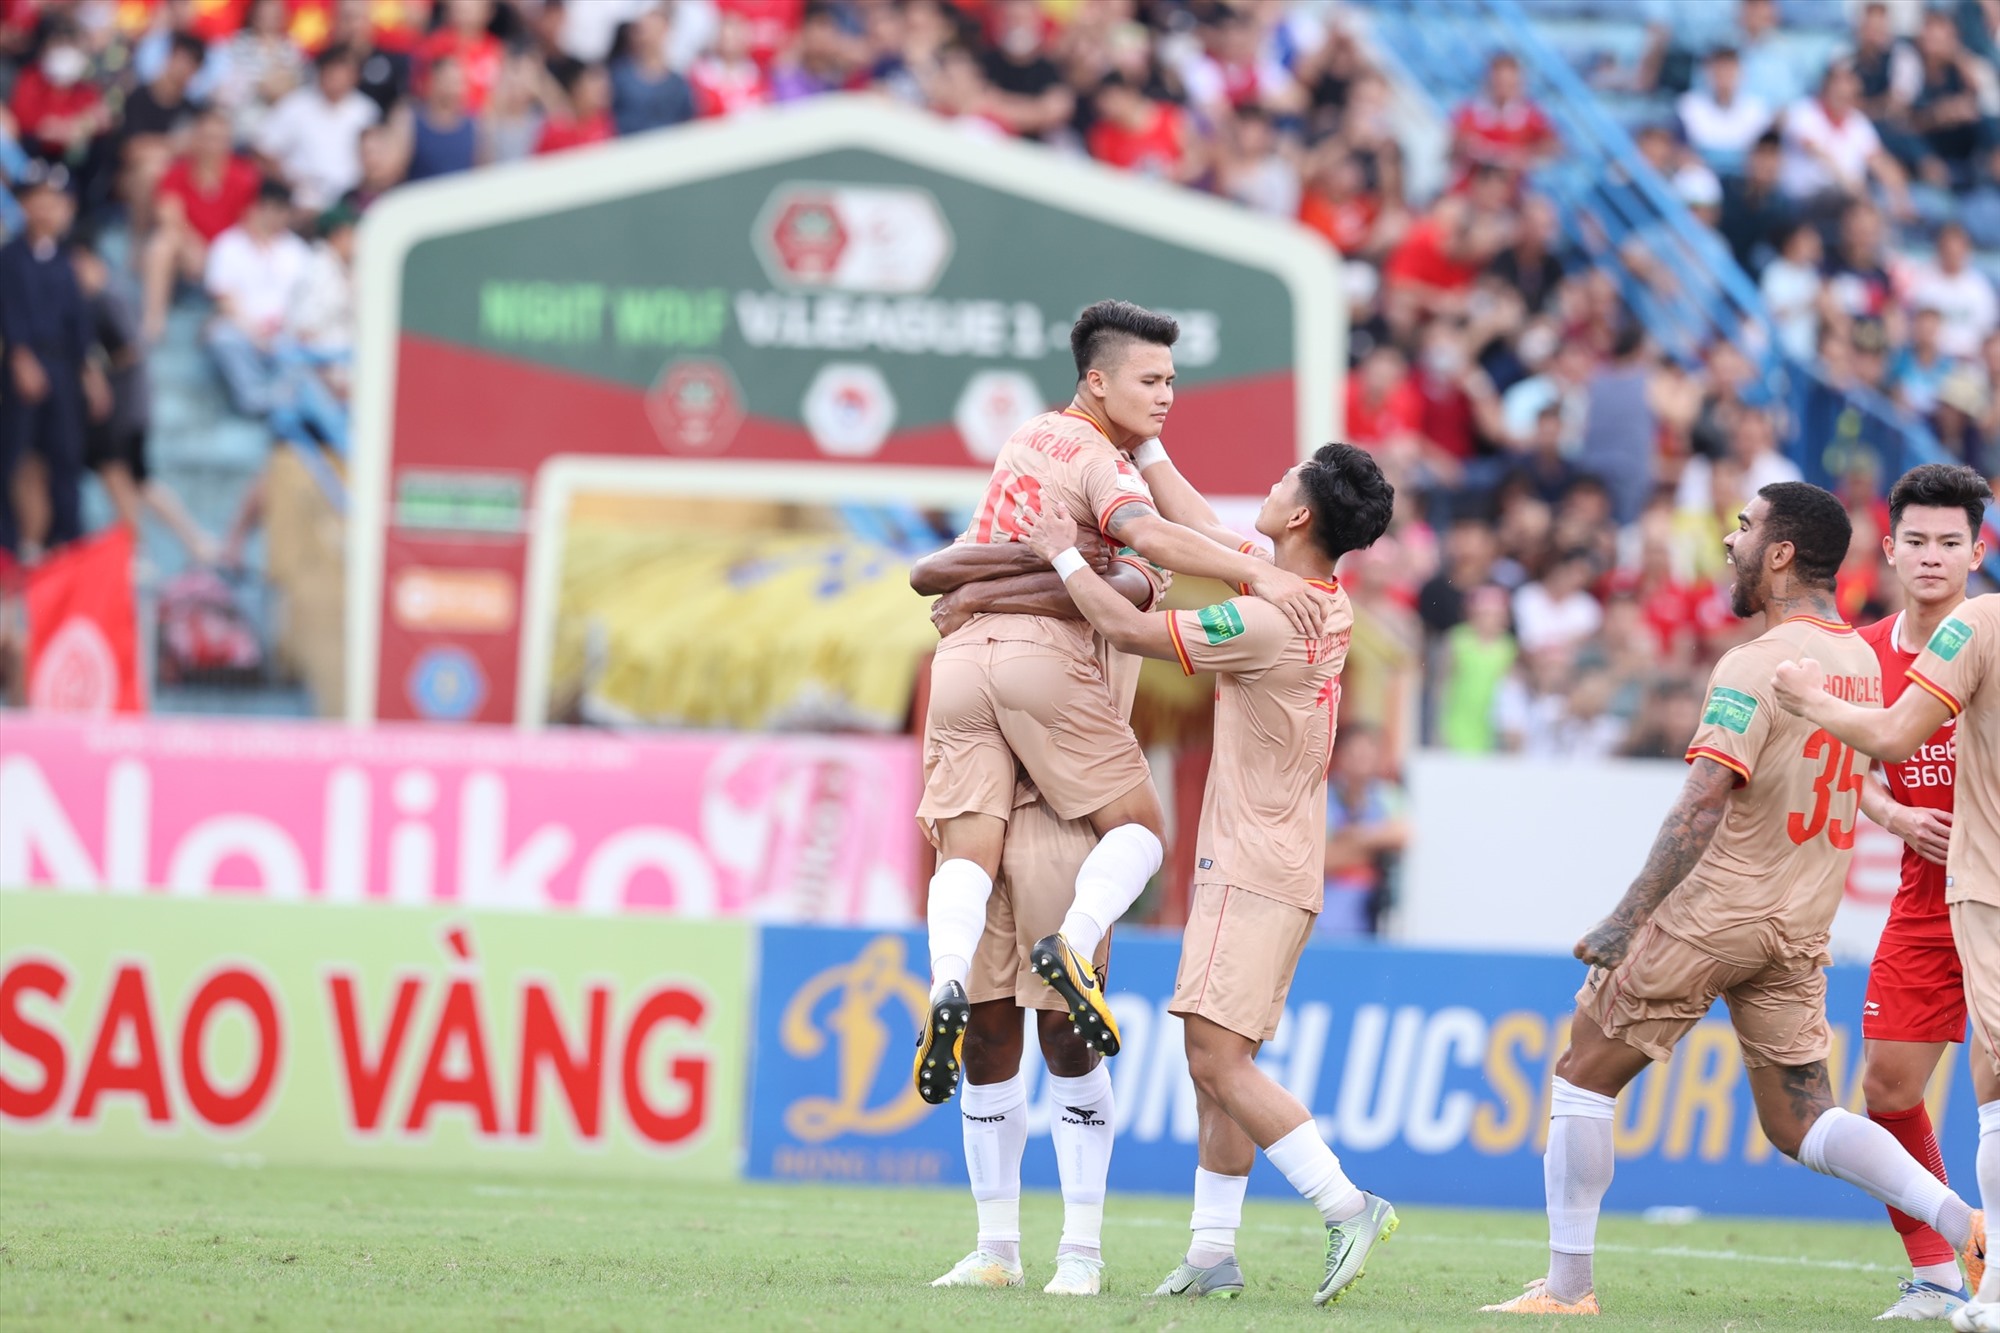 Đây cũng là bàn thắng đầu tiên của Quang Hải trong màu áo đội bóng mới.